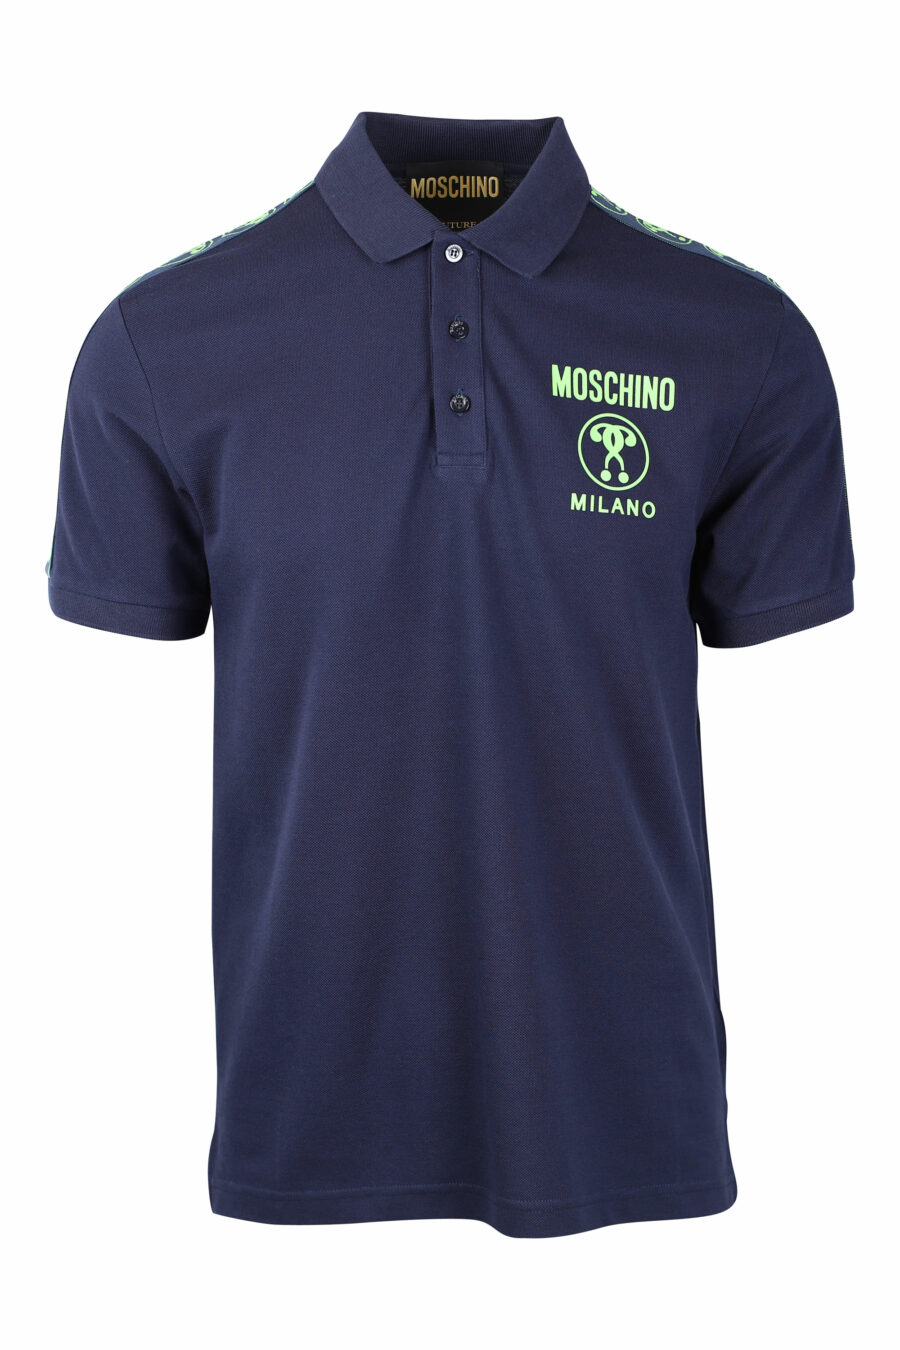 Dunkelblaues Poloshirt mit doppelter Minifrage und grünem Schulterlogo - IMG 1451